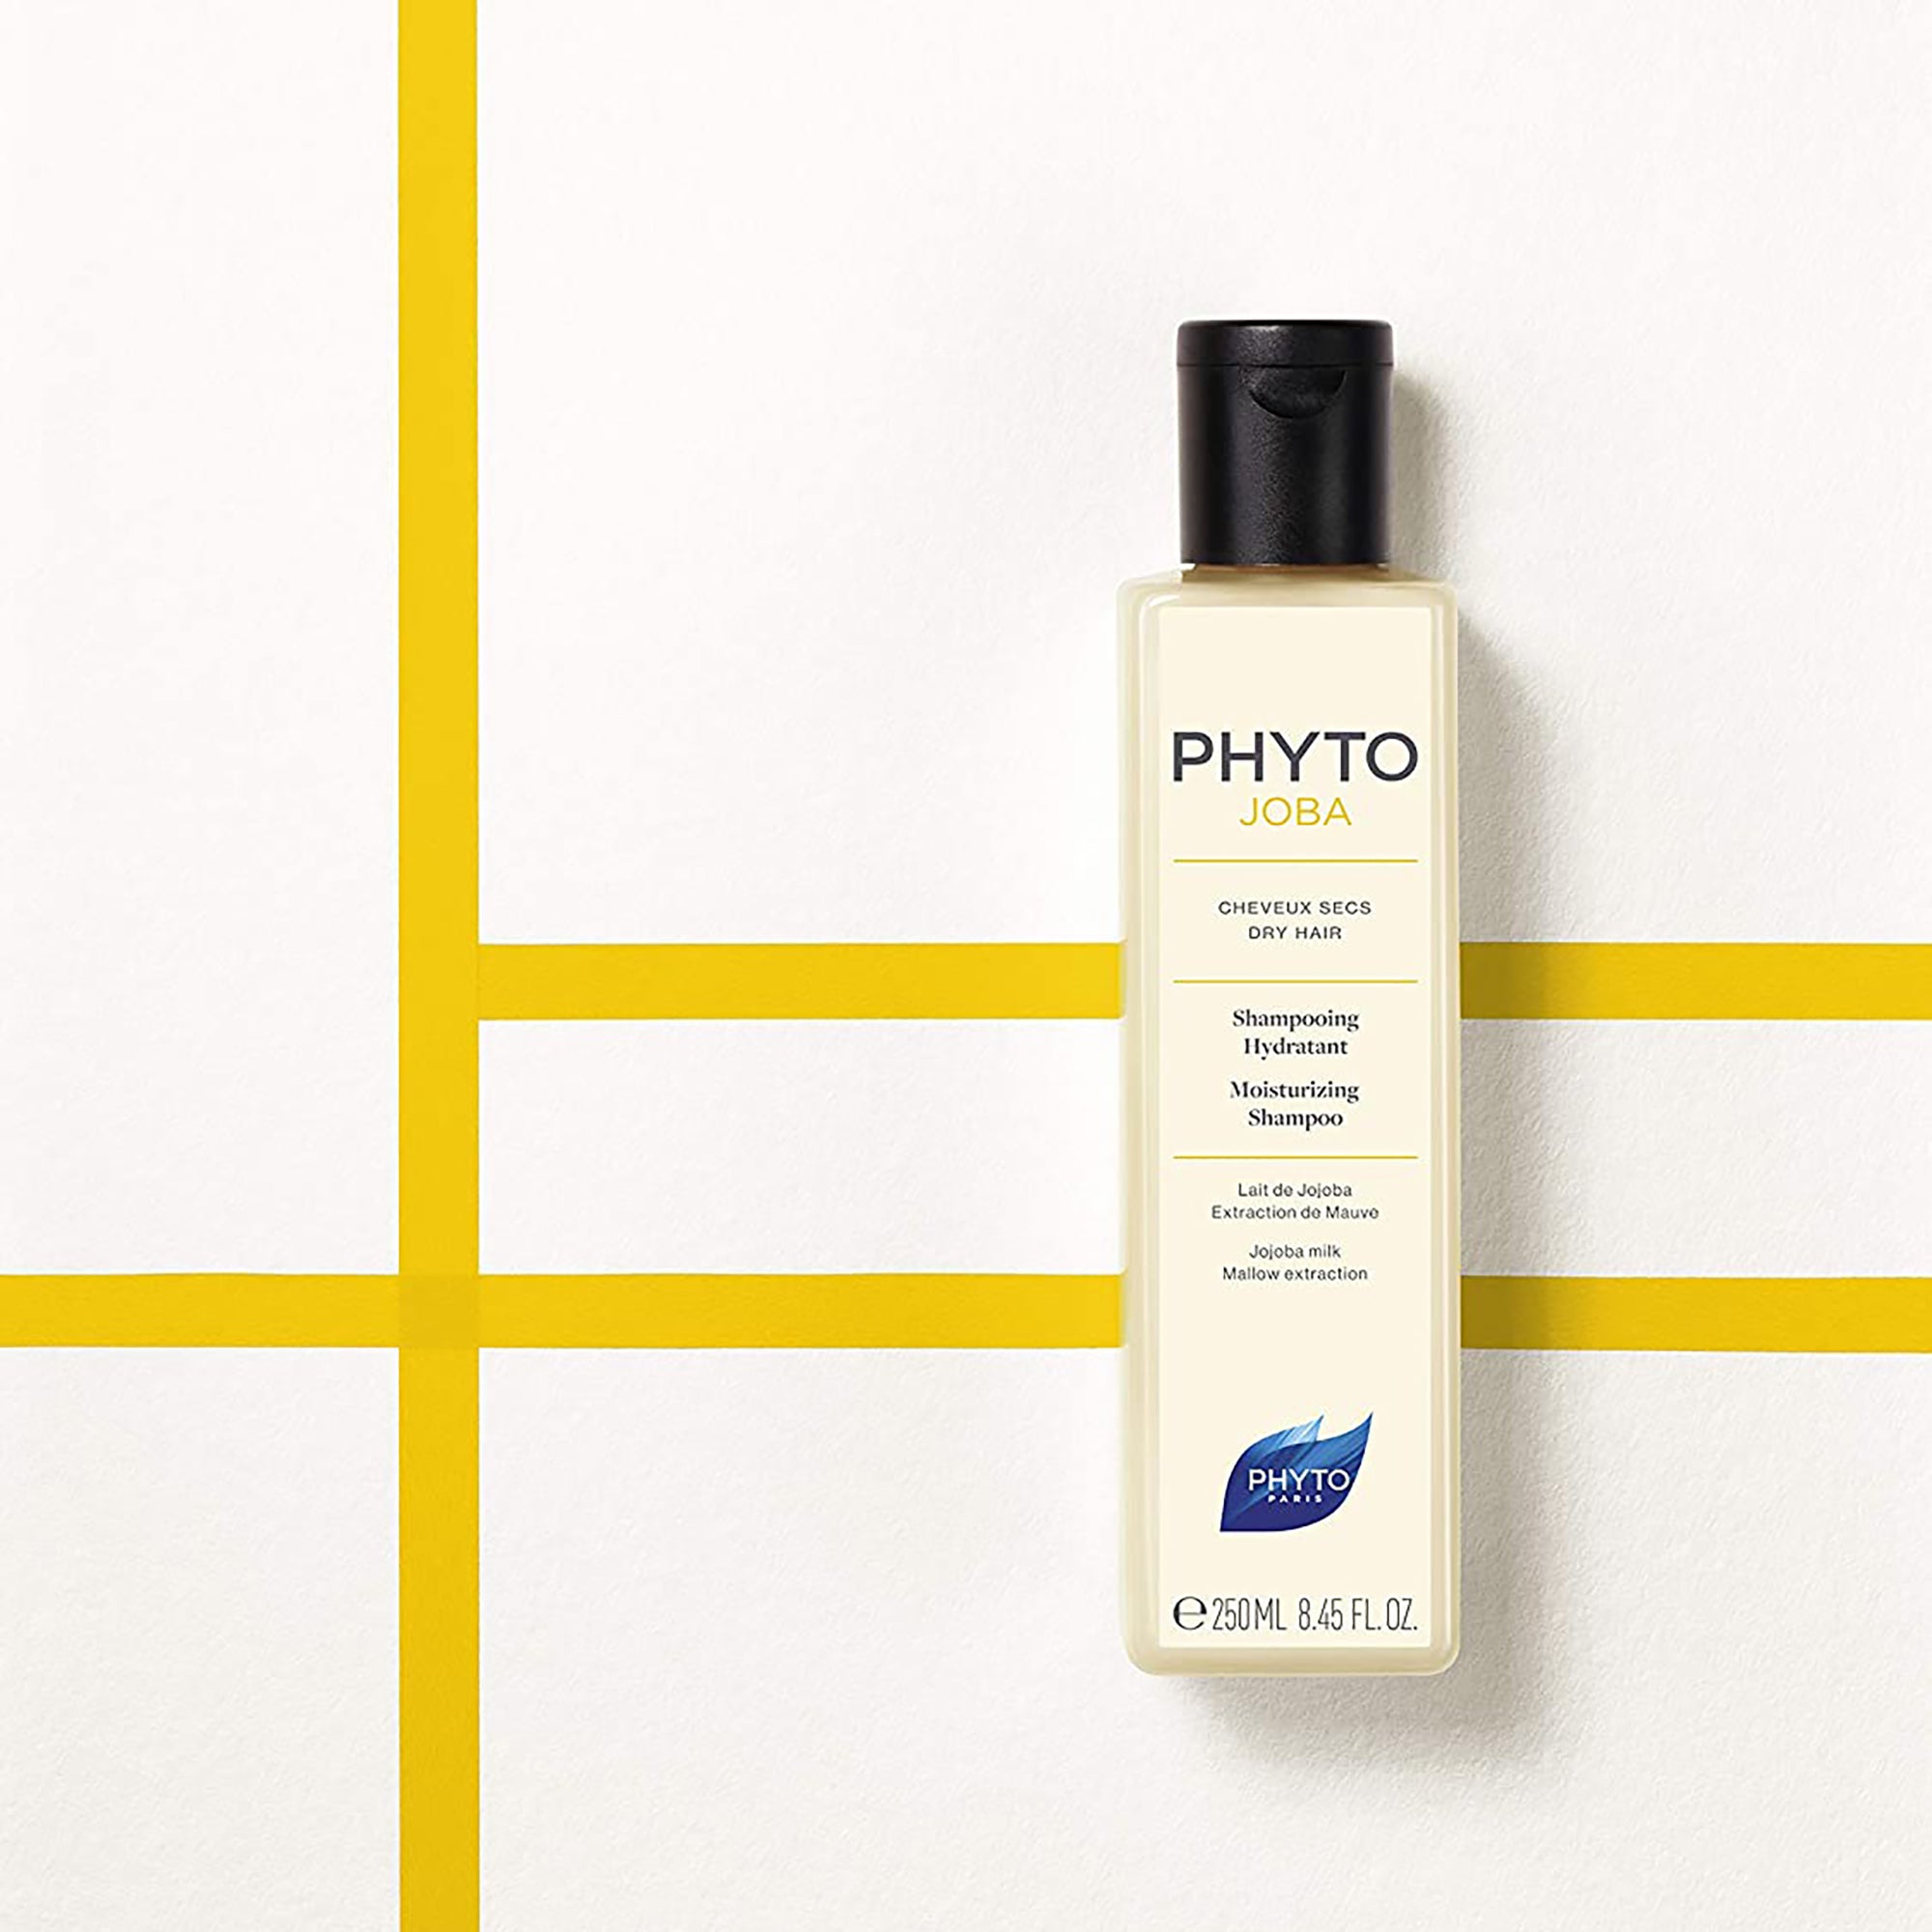 Phyto Phytojoba Dry Hair Moisturizing Shampoo / 8.45